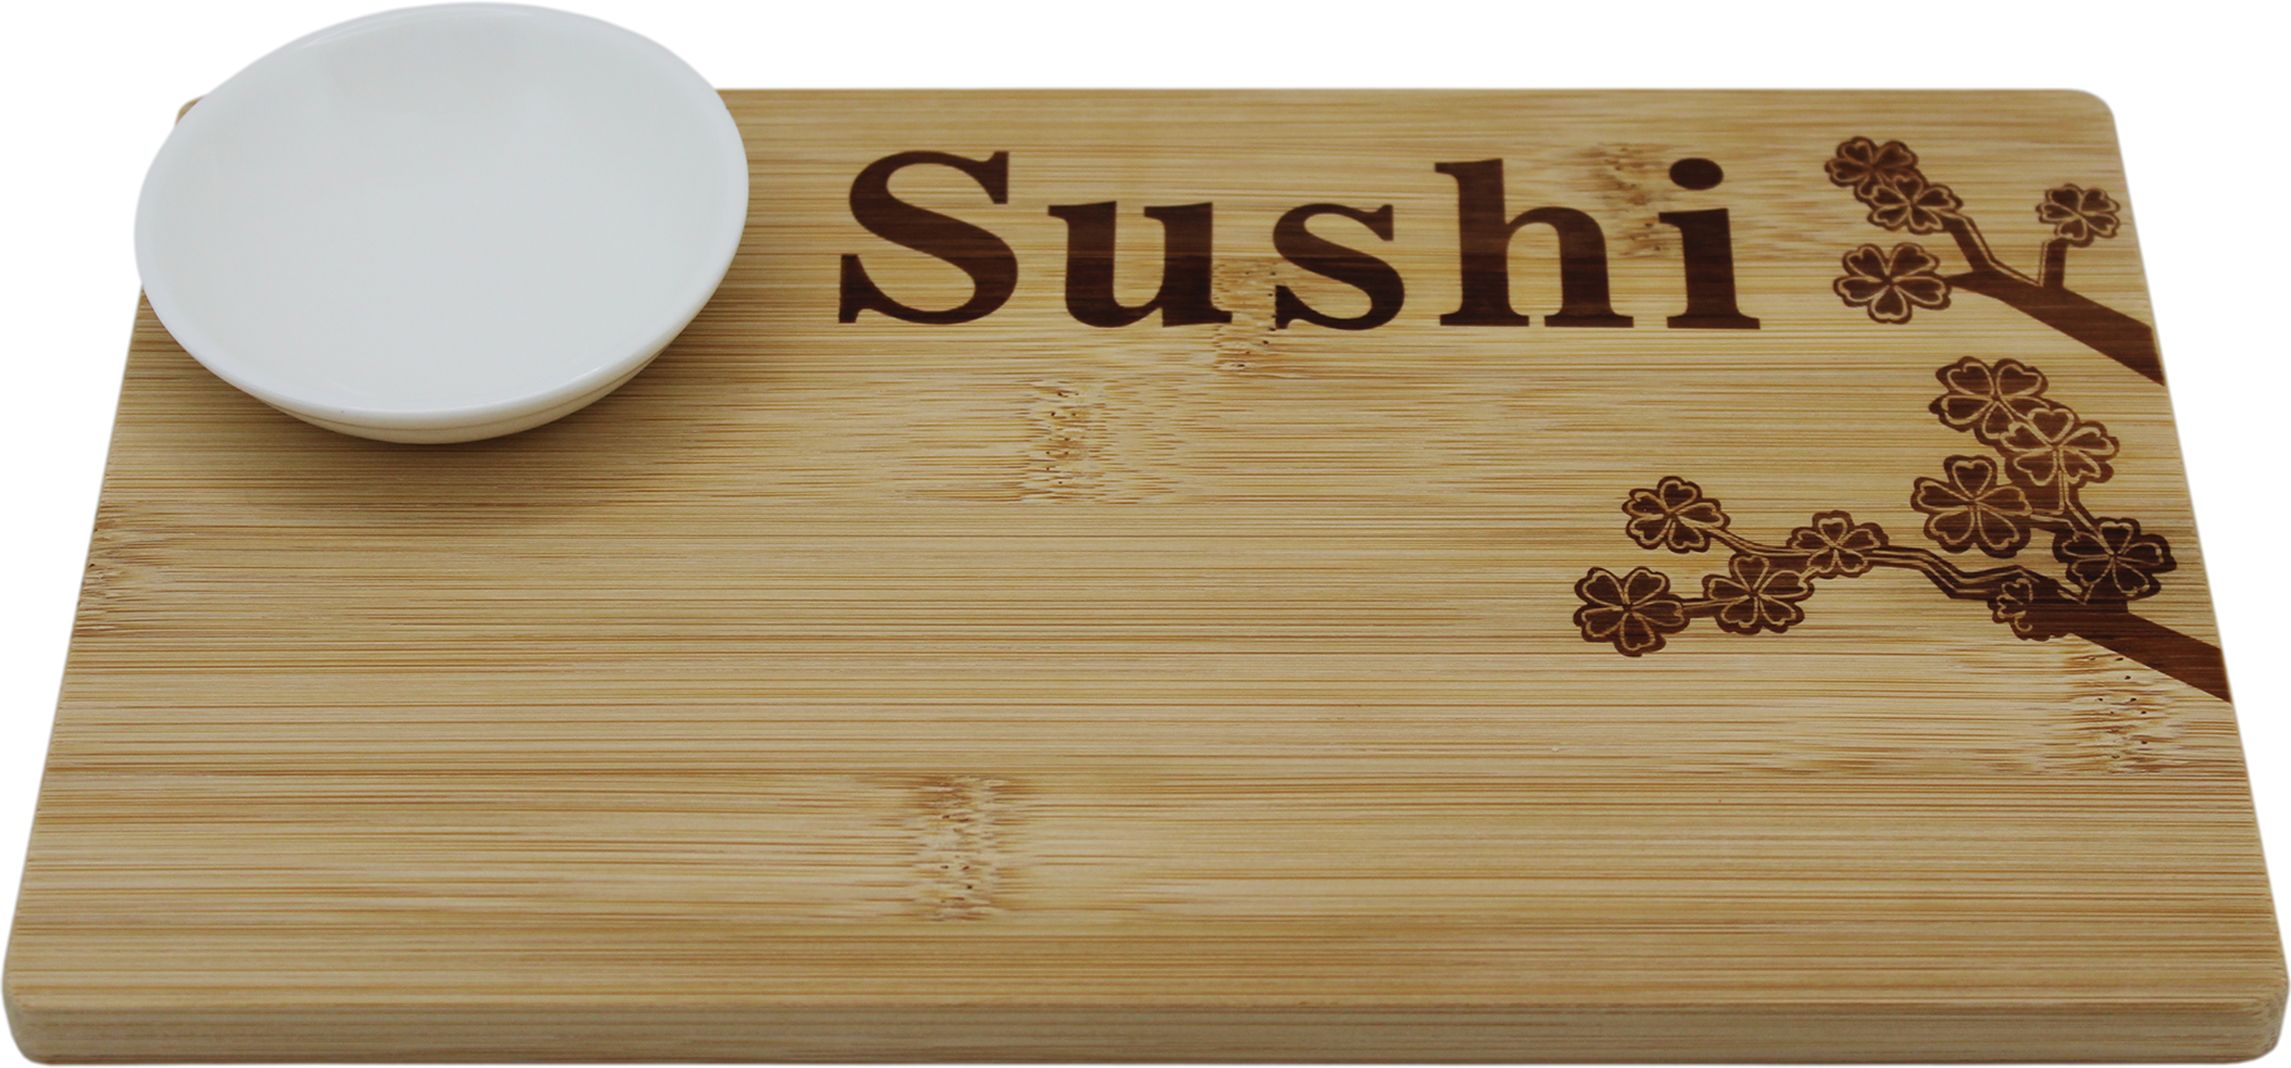 Дешевые набор для суши в минске фото 76